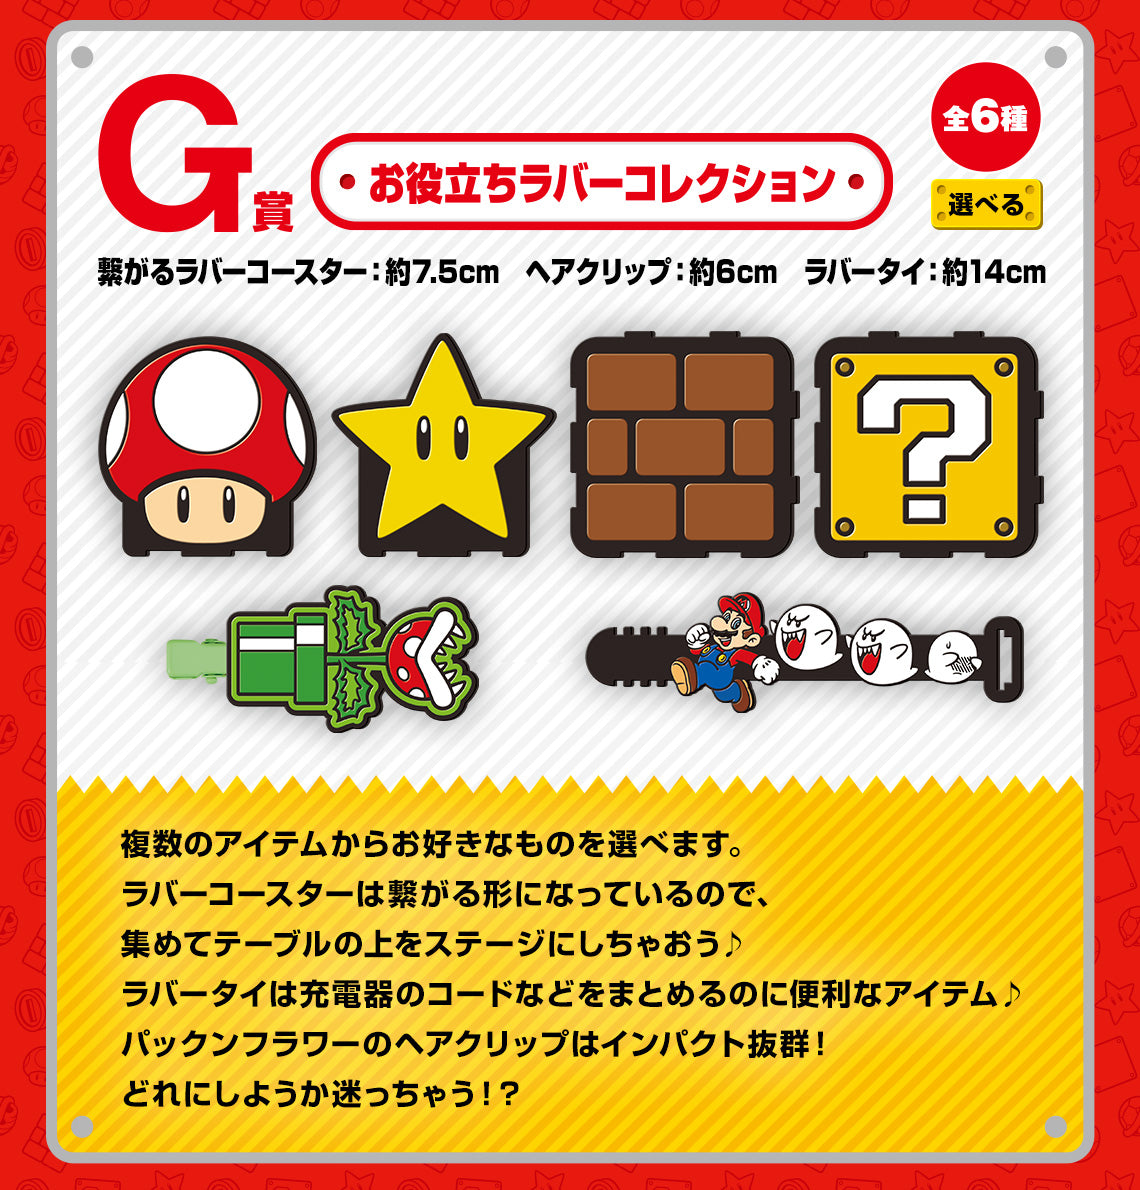 Ichiban Kuji Super Mario Bros. Adventure Life At Home-Bandai-Ace Cards &amp; Collectibles